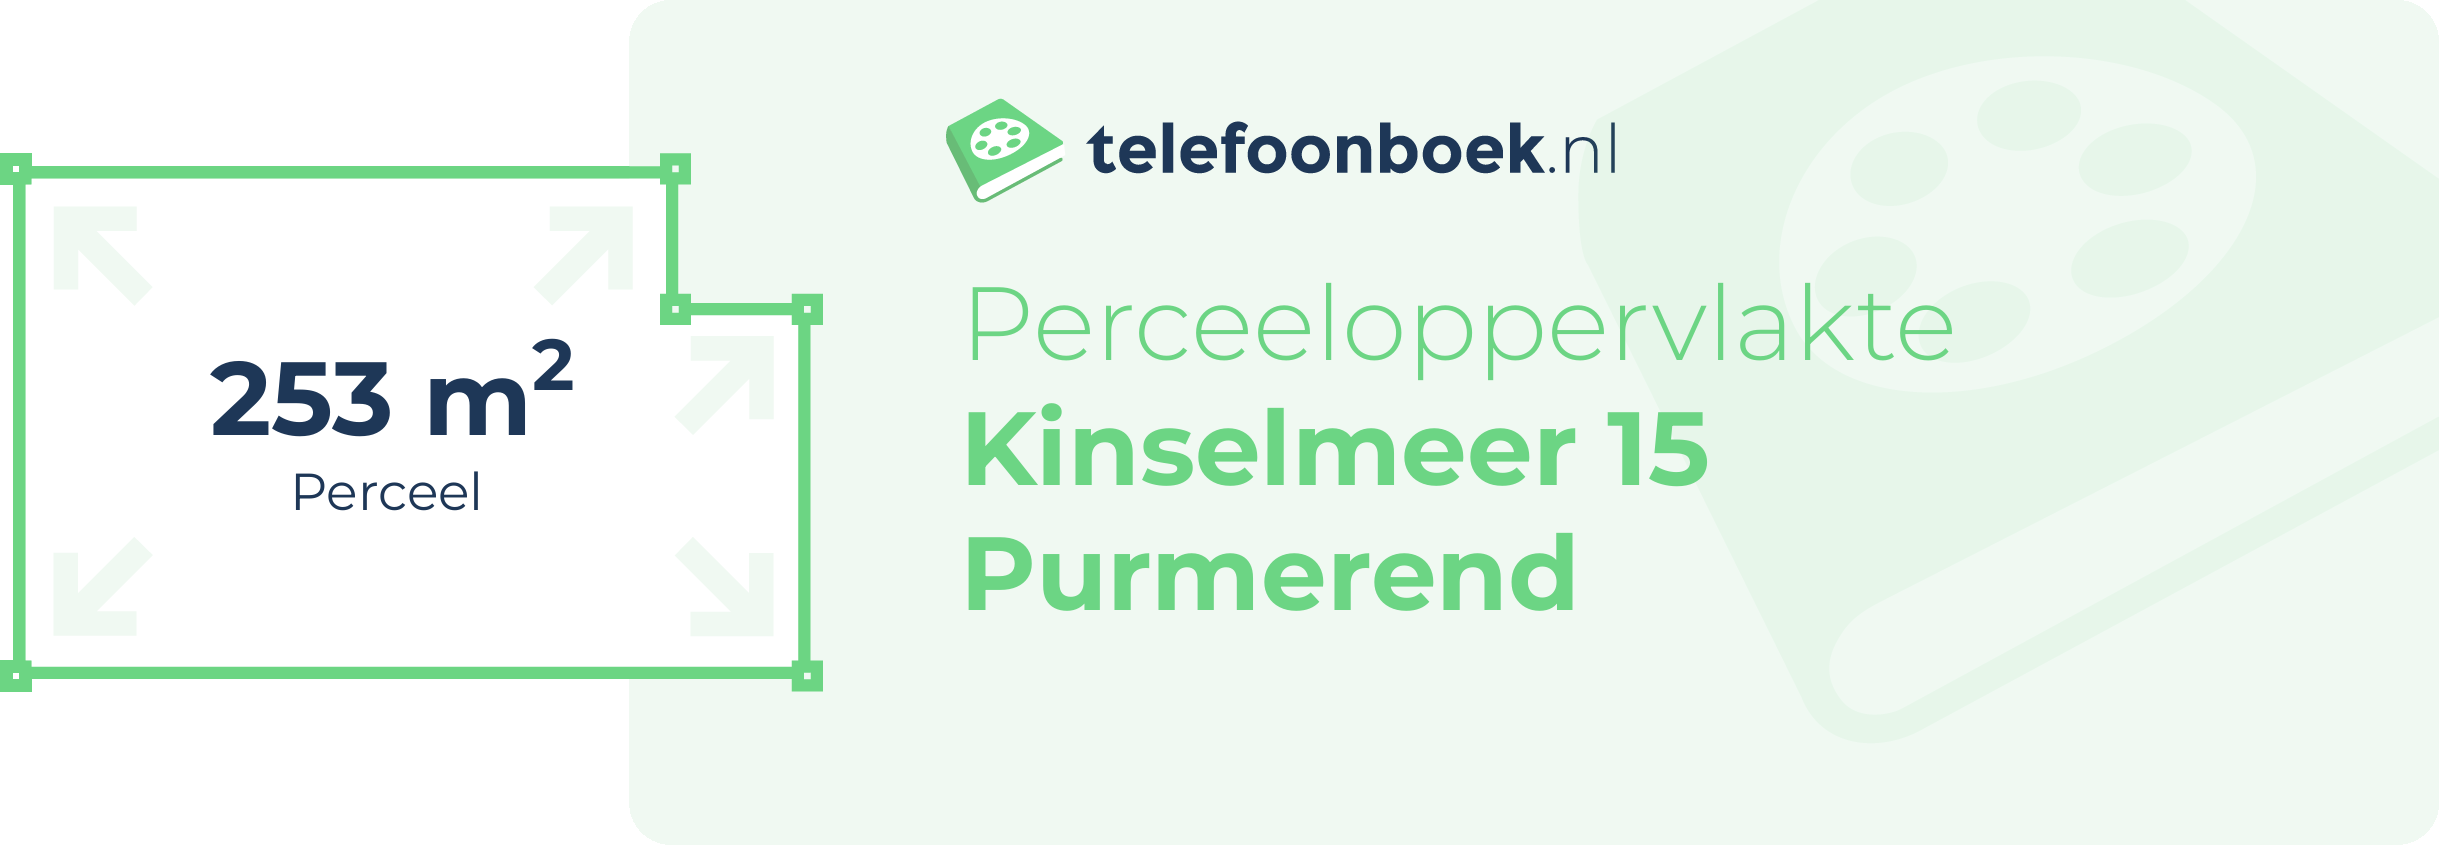 Perceeloppervlakte Kinselmeer 15 Purmerend